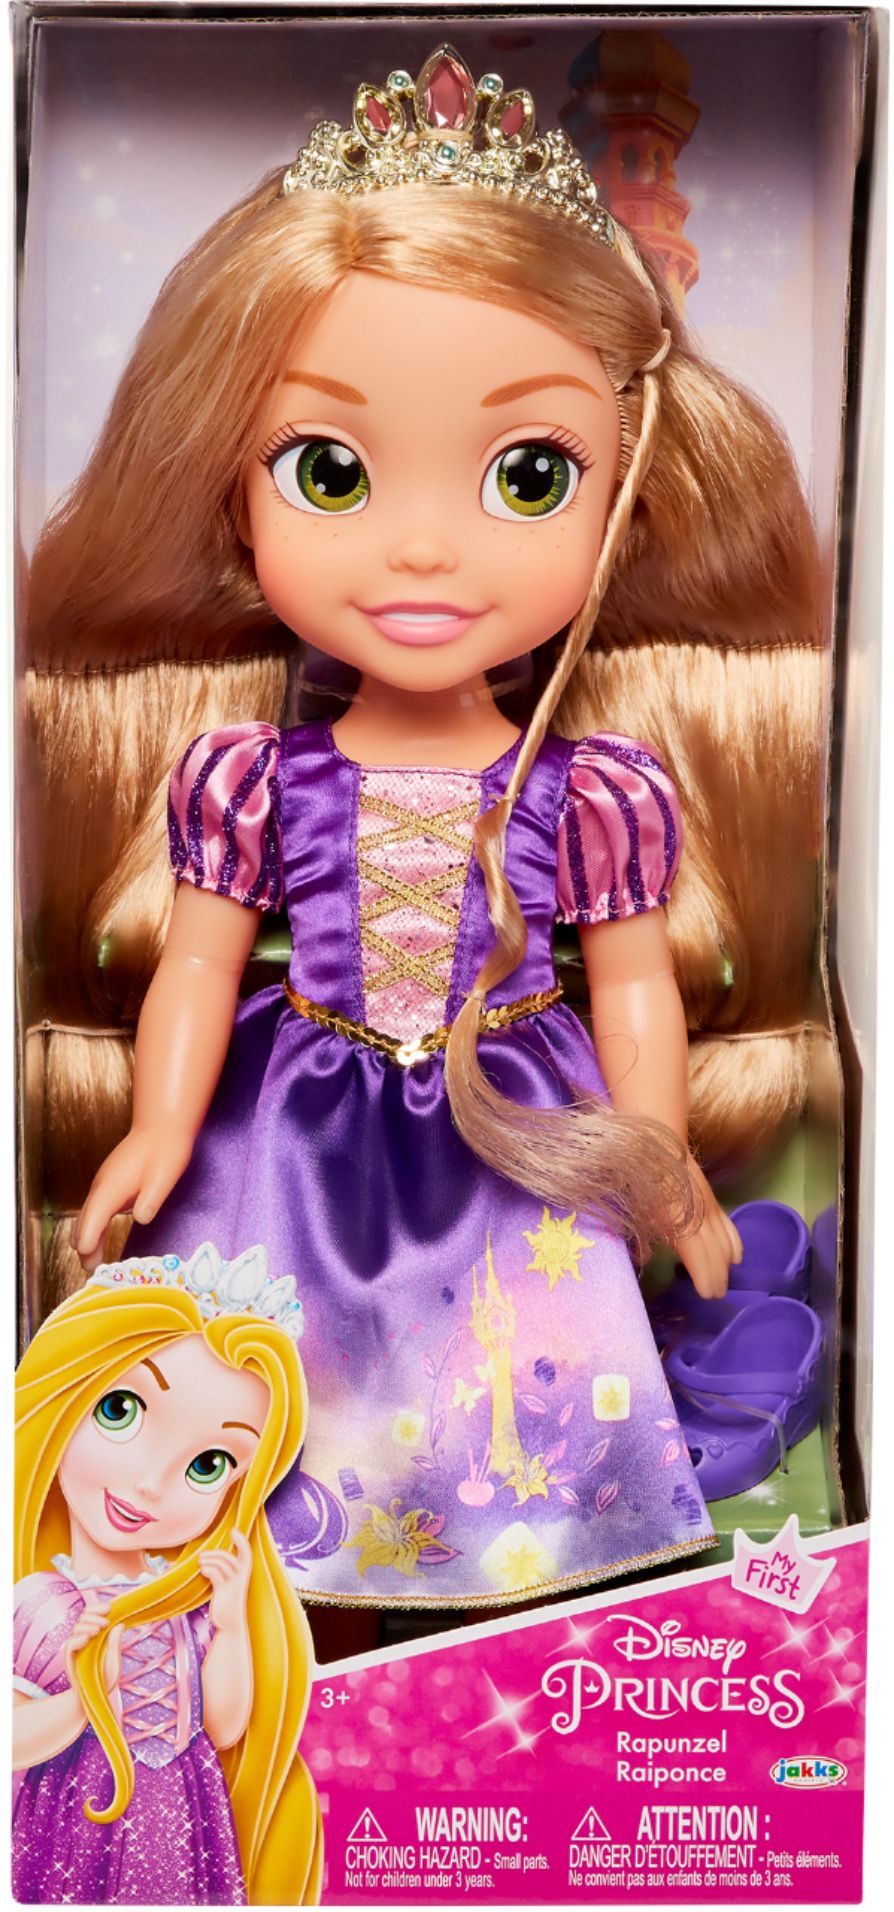 All Disney Princess Dolls in Fashion Dolls 